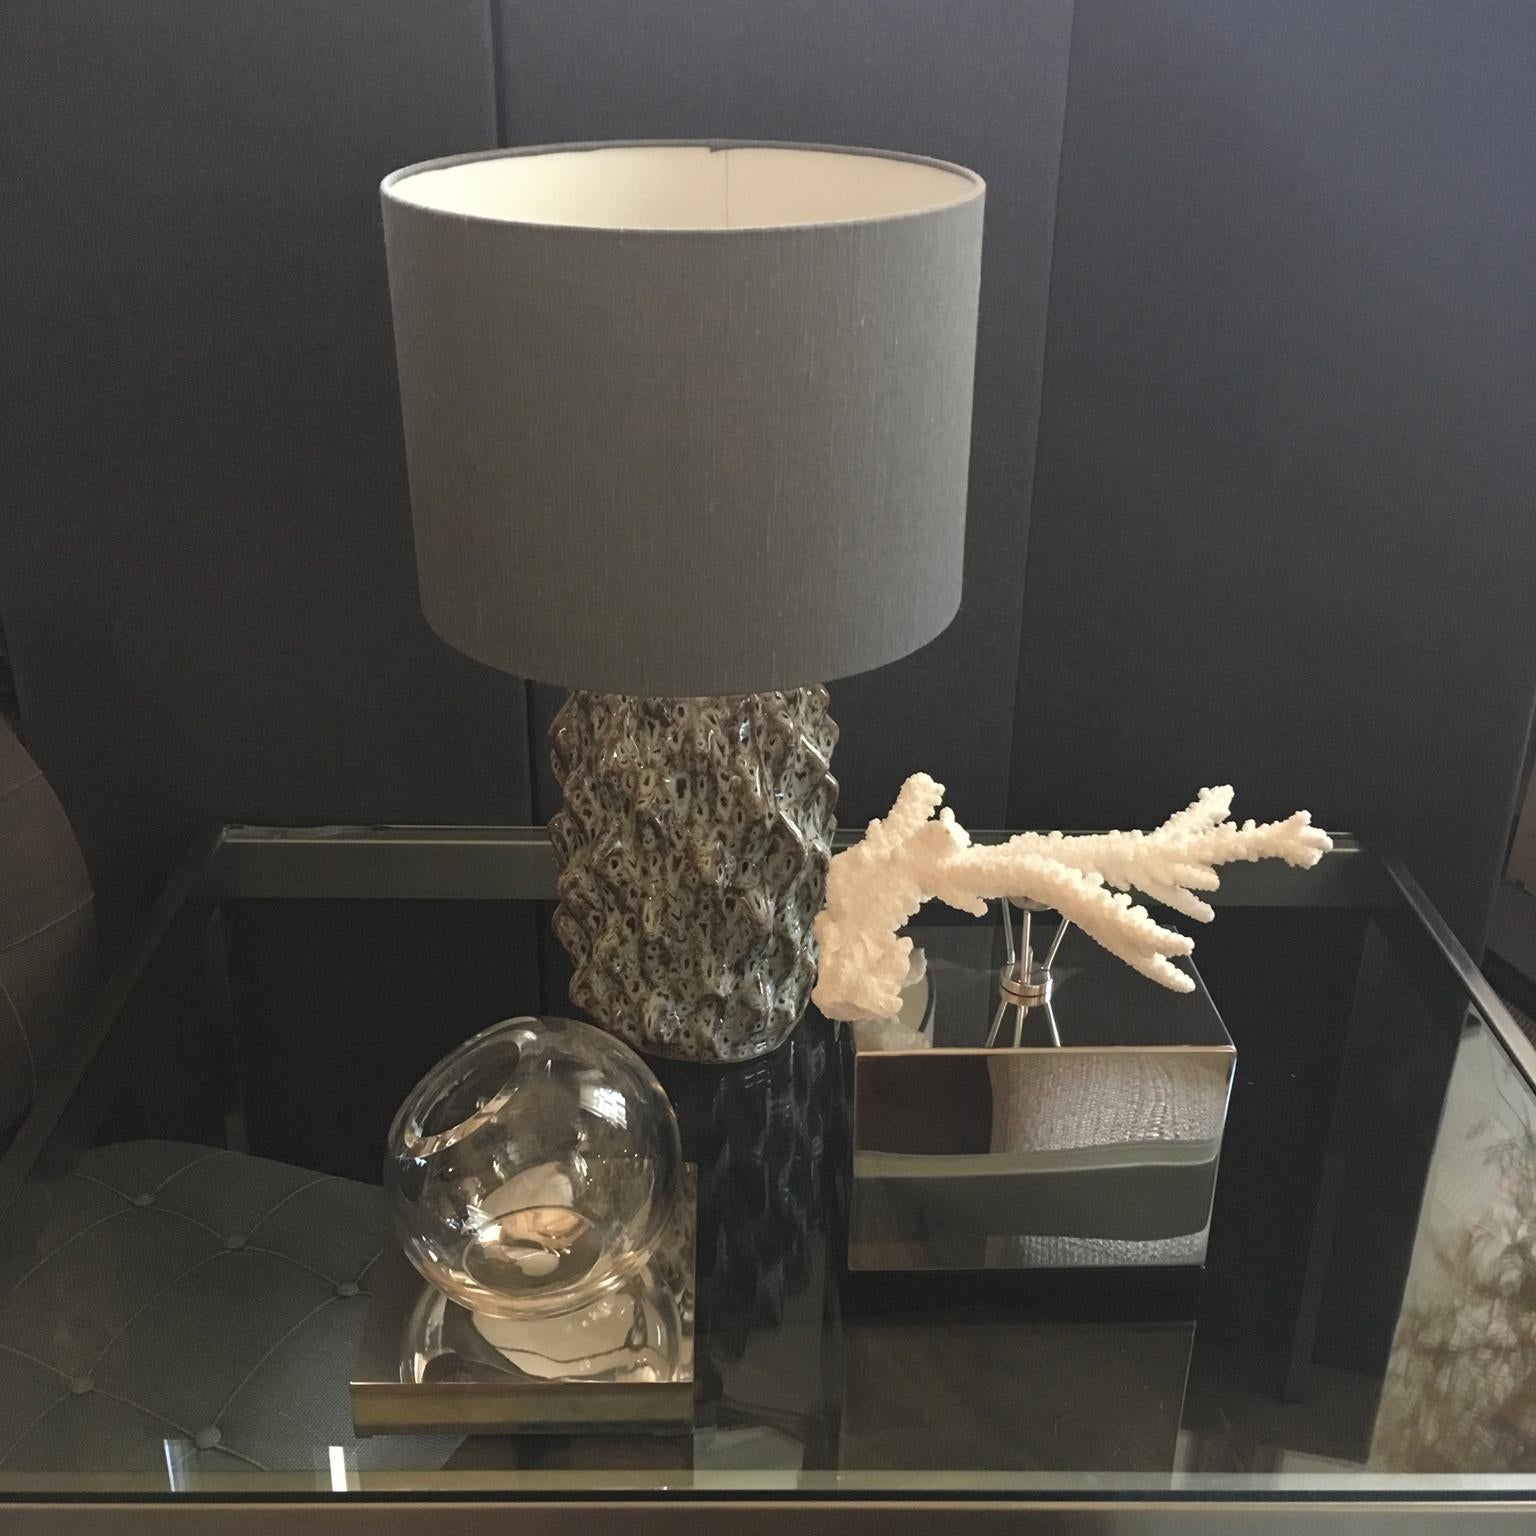 Ce vase rond contemporain en verre transparent soufflé est entièrement fabriqué en Italie. Le verre rond tourne sur sa base carrée en laiton en finition chromée.
La forme est comme une sculpture, très belle avec une fleur unique comme une fleur de